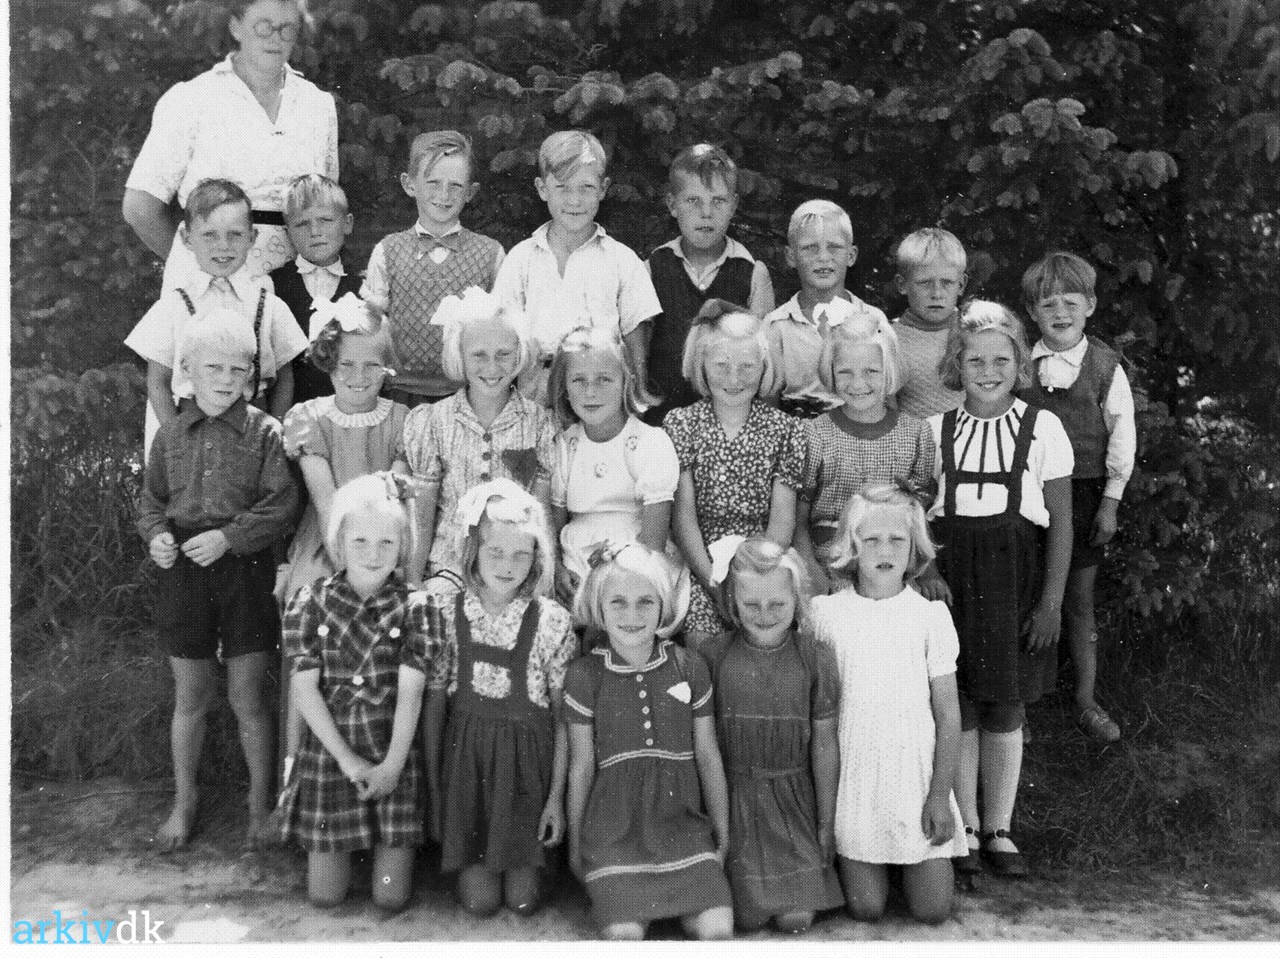 arkiv.dk | Lærer og elever på skole 1947